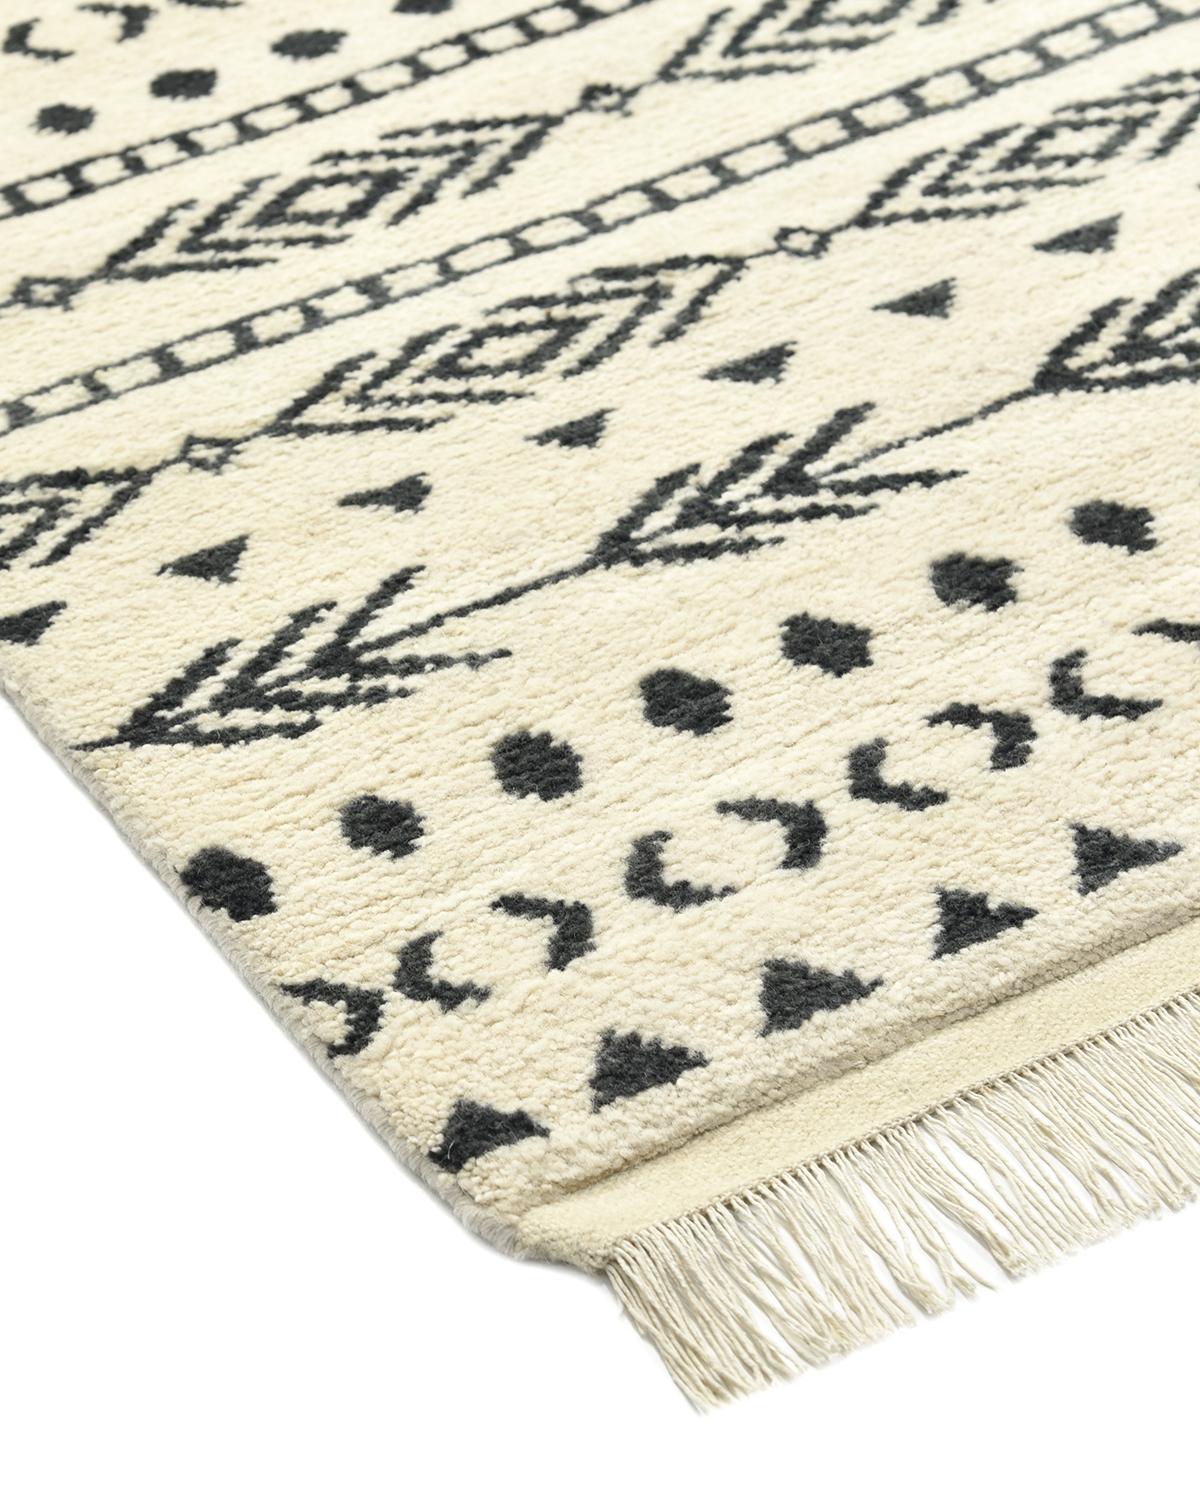 Le patrimoine marocain en matière de fabrication de tapis s'étend des Beni Ourains neutres et moelleux aux kilims légers et colorés. Rendant hommage au savoir-faire traditionnel et aux motifs séculaires, ces tapis fabriqués à la main confèrent un